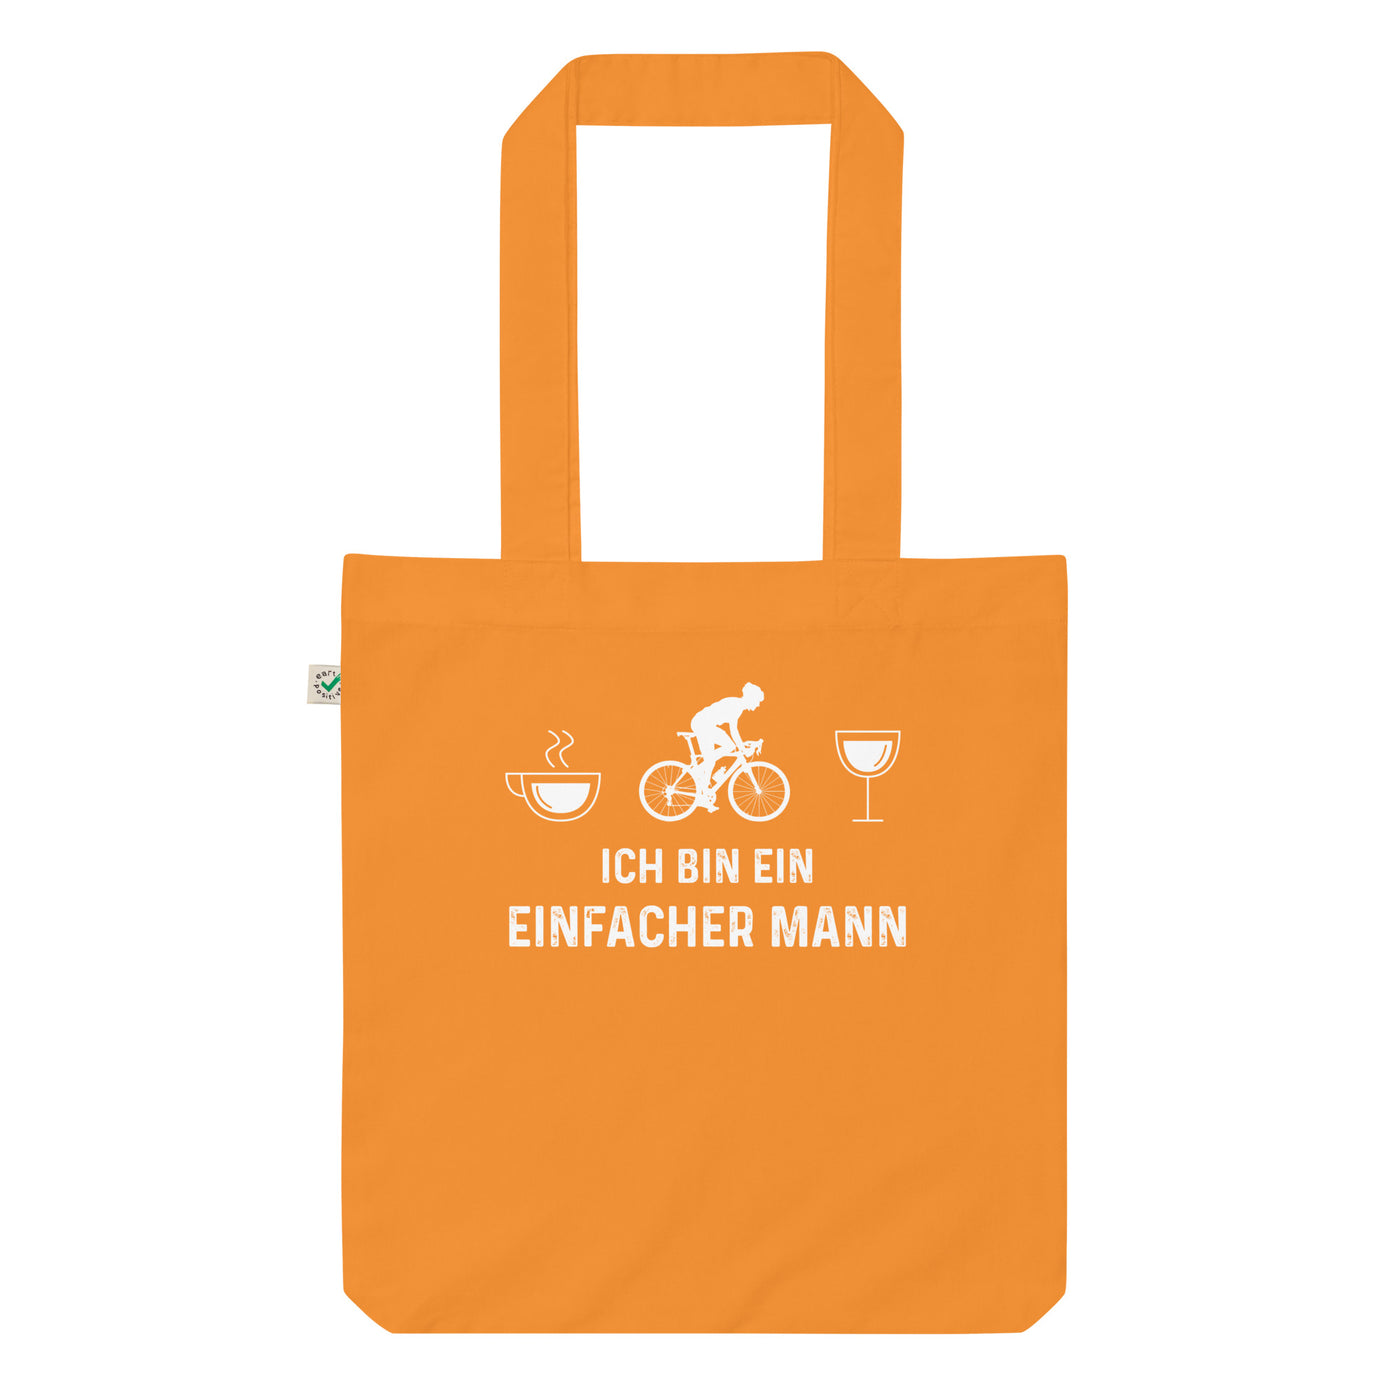 Ich Bin Ein Einfacher Mann 1 - Organic Einkaufstasche fahrrad Cinnamon